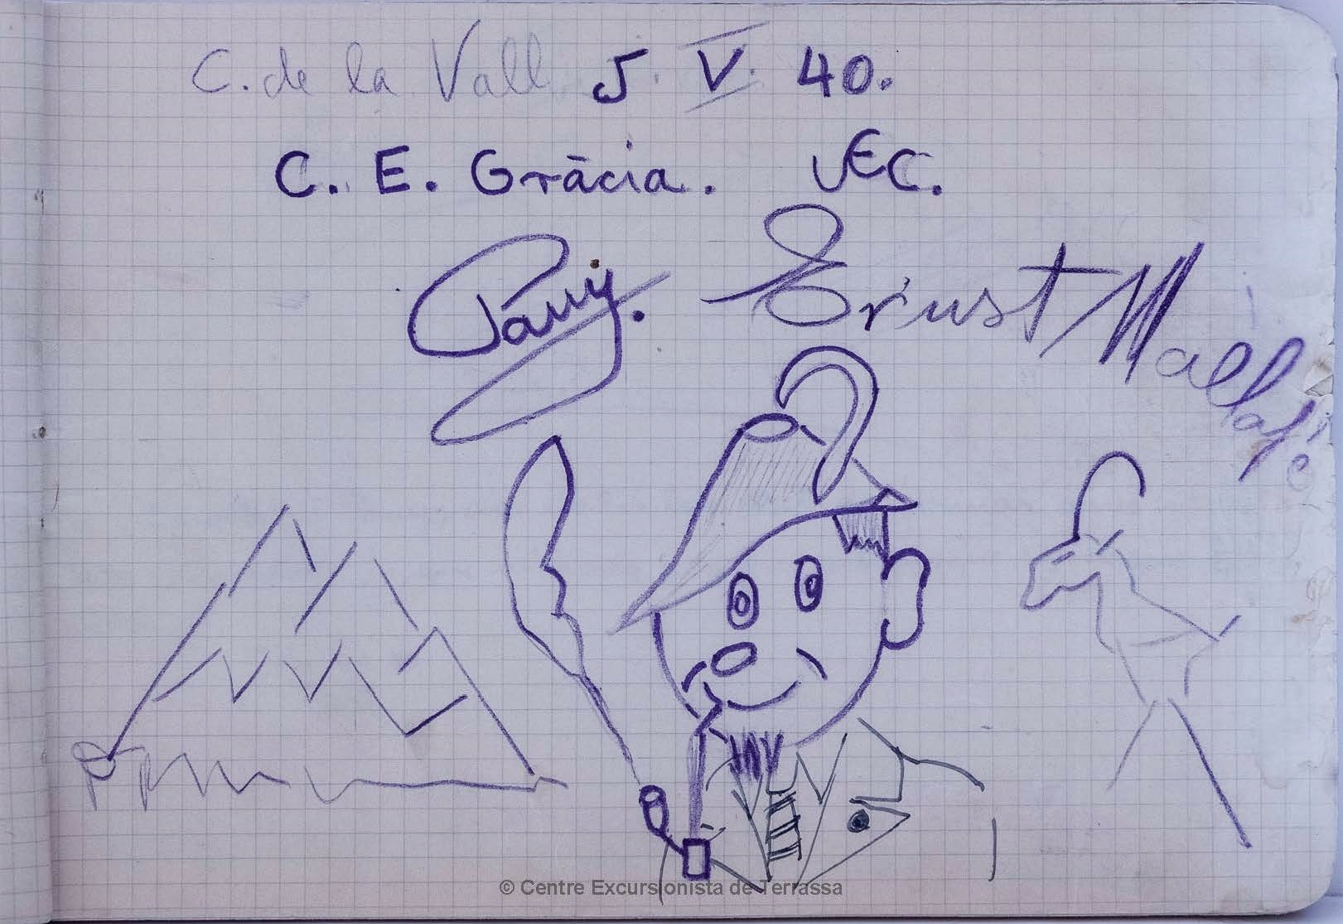 Signatures d’en Jordi Panyella (i autoretrat?) i l’Ernest Mallafré al llibre nº 1 del Cavall Bernat de la Vall (03/12/1933-14-04-1945) col·locat per la Secció d’Esports de Neu i d’Alta Muntanya del CET